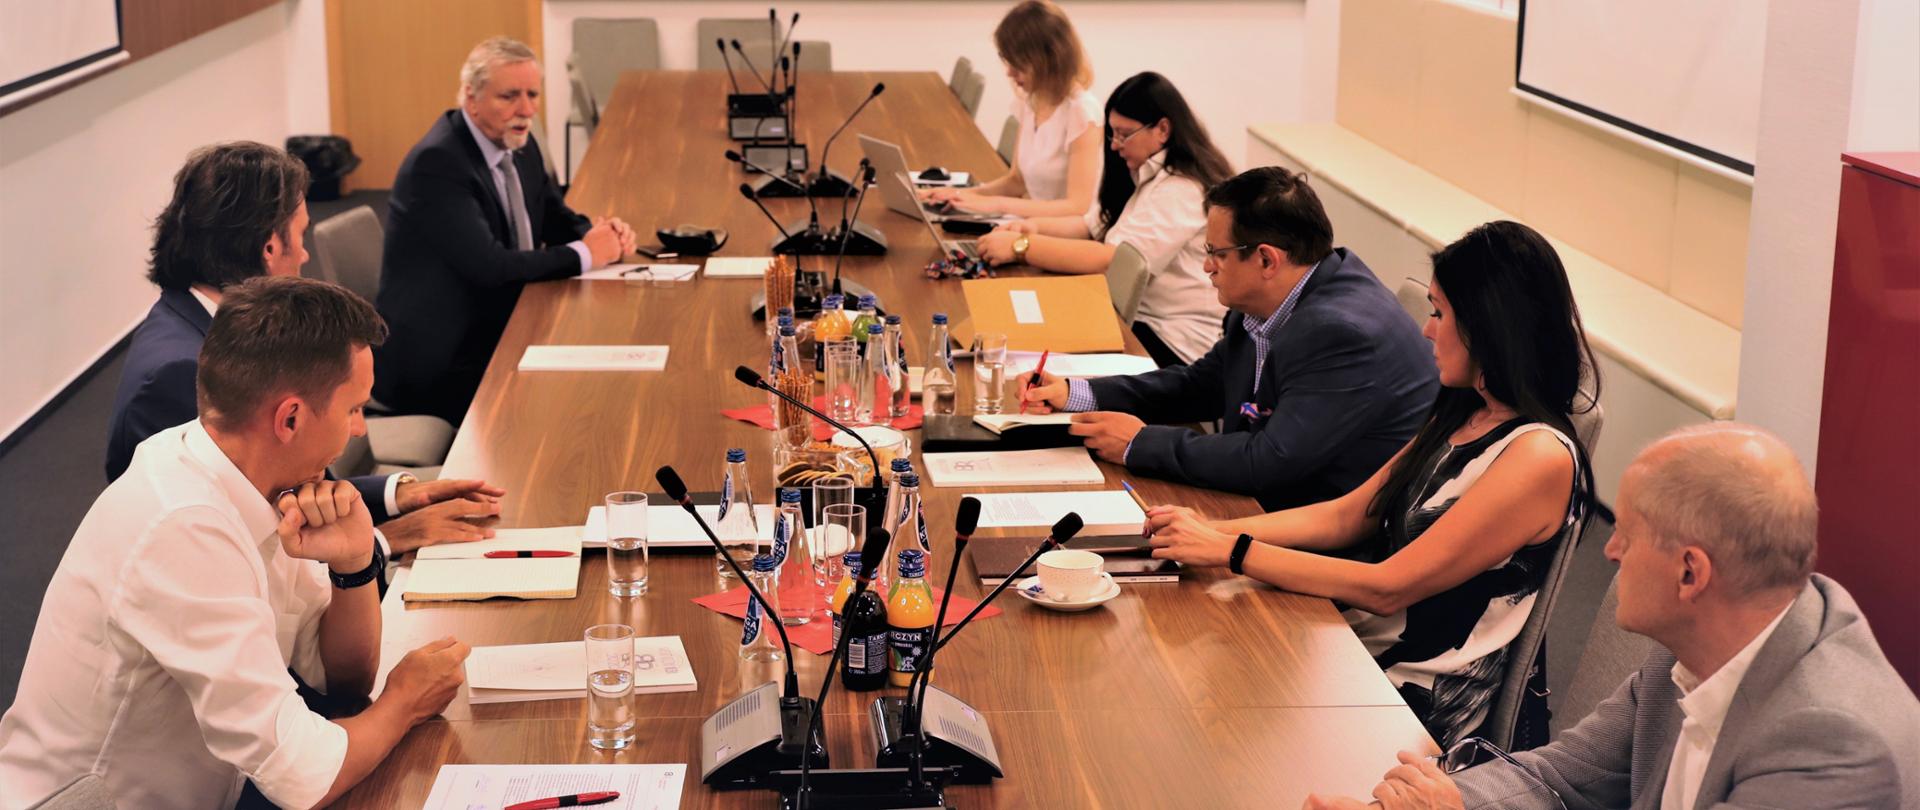 Na zdjęciu spotkanie ekspertów Think Tanku NCBR w siedzibie NCBR w sali konferencyjnej. Spotkanie prowadzi dyrektor Centrum dr inż. Wojciech Kamieniecki. 